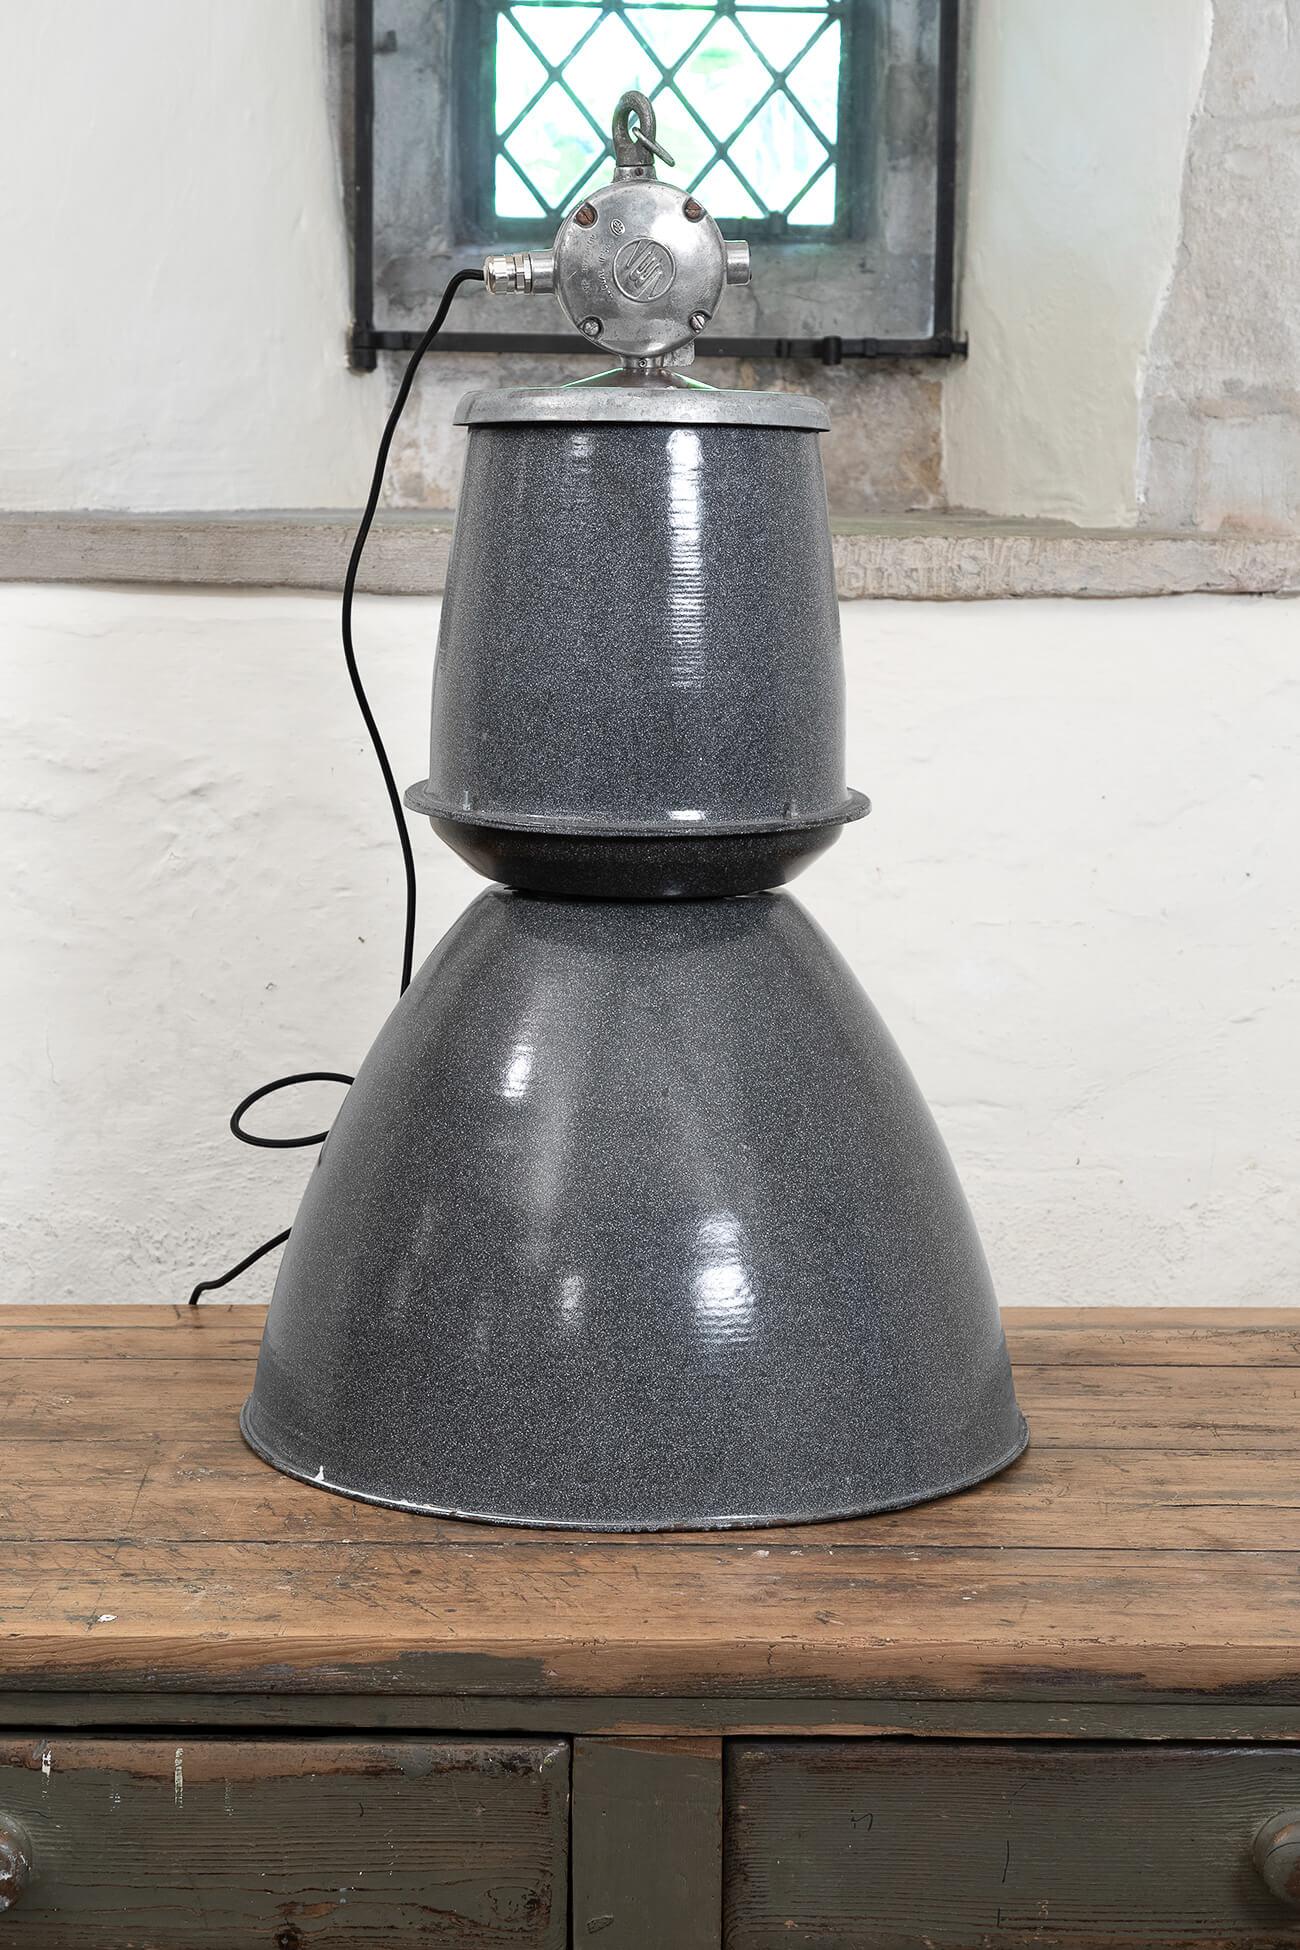 Vintage EFC Fabriklampe. Mit grauem Emaille-Farbton und hervorragender industrieller Ausstrahlung. Ursprünglich wurde die Lampe vor ihrer Umrüstung als Emaille-Tankstellenlampe verwendet. Niederlande, ca. 1950er Jahre. Der Artikel kann problemlos